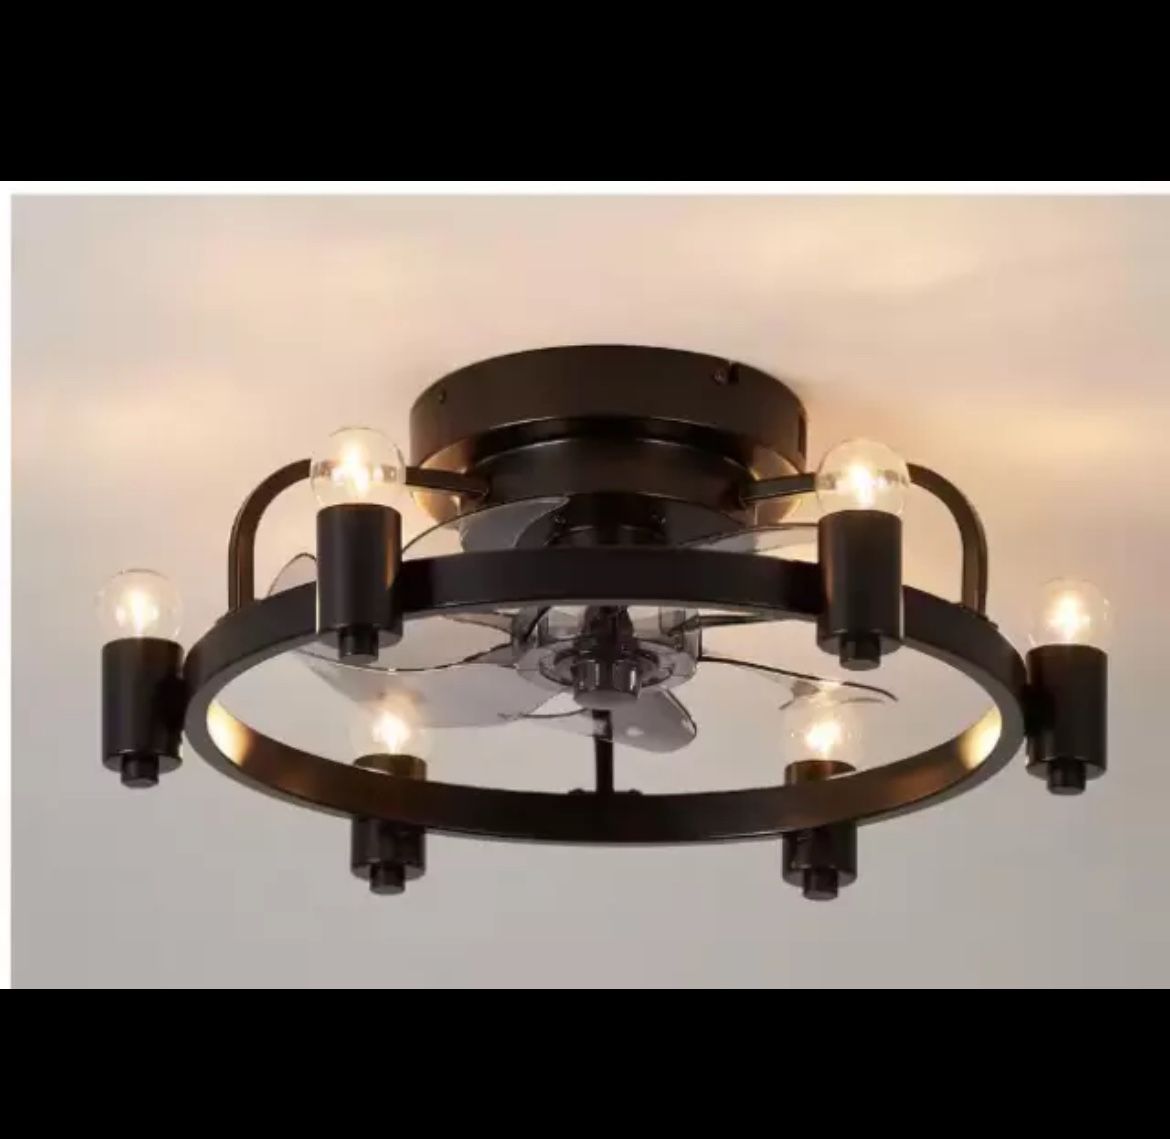 Blade Span 13.7 in 20 in 6-Light Small Modern Black Ceiling Fan w/Light & Remote